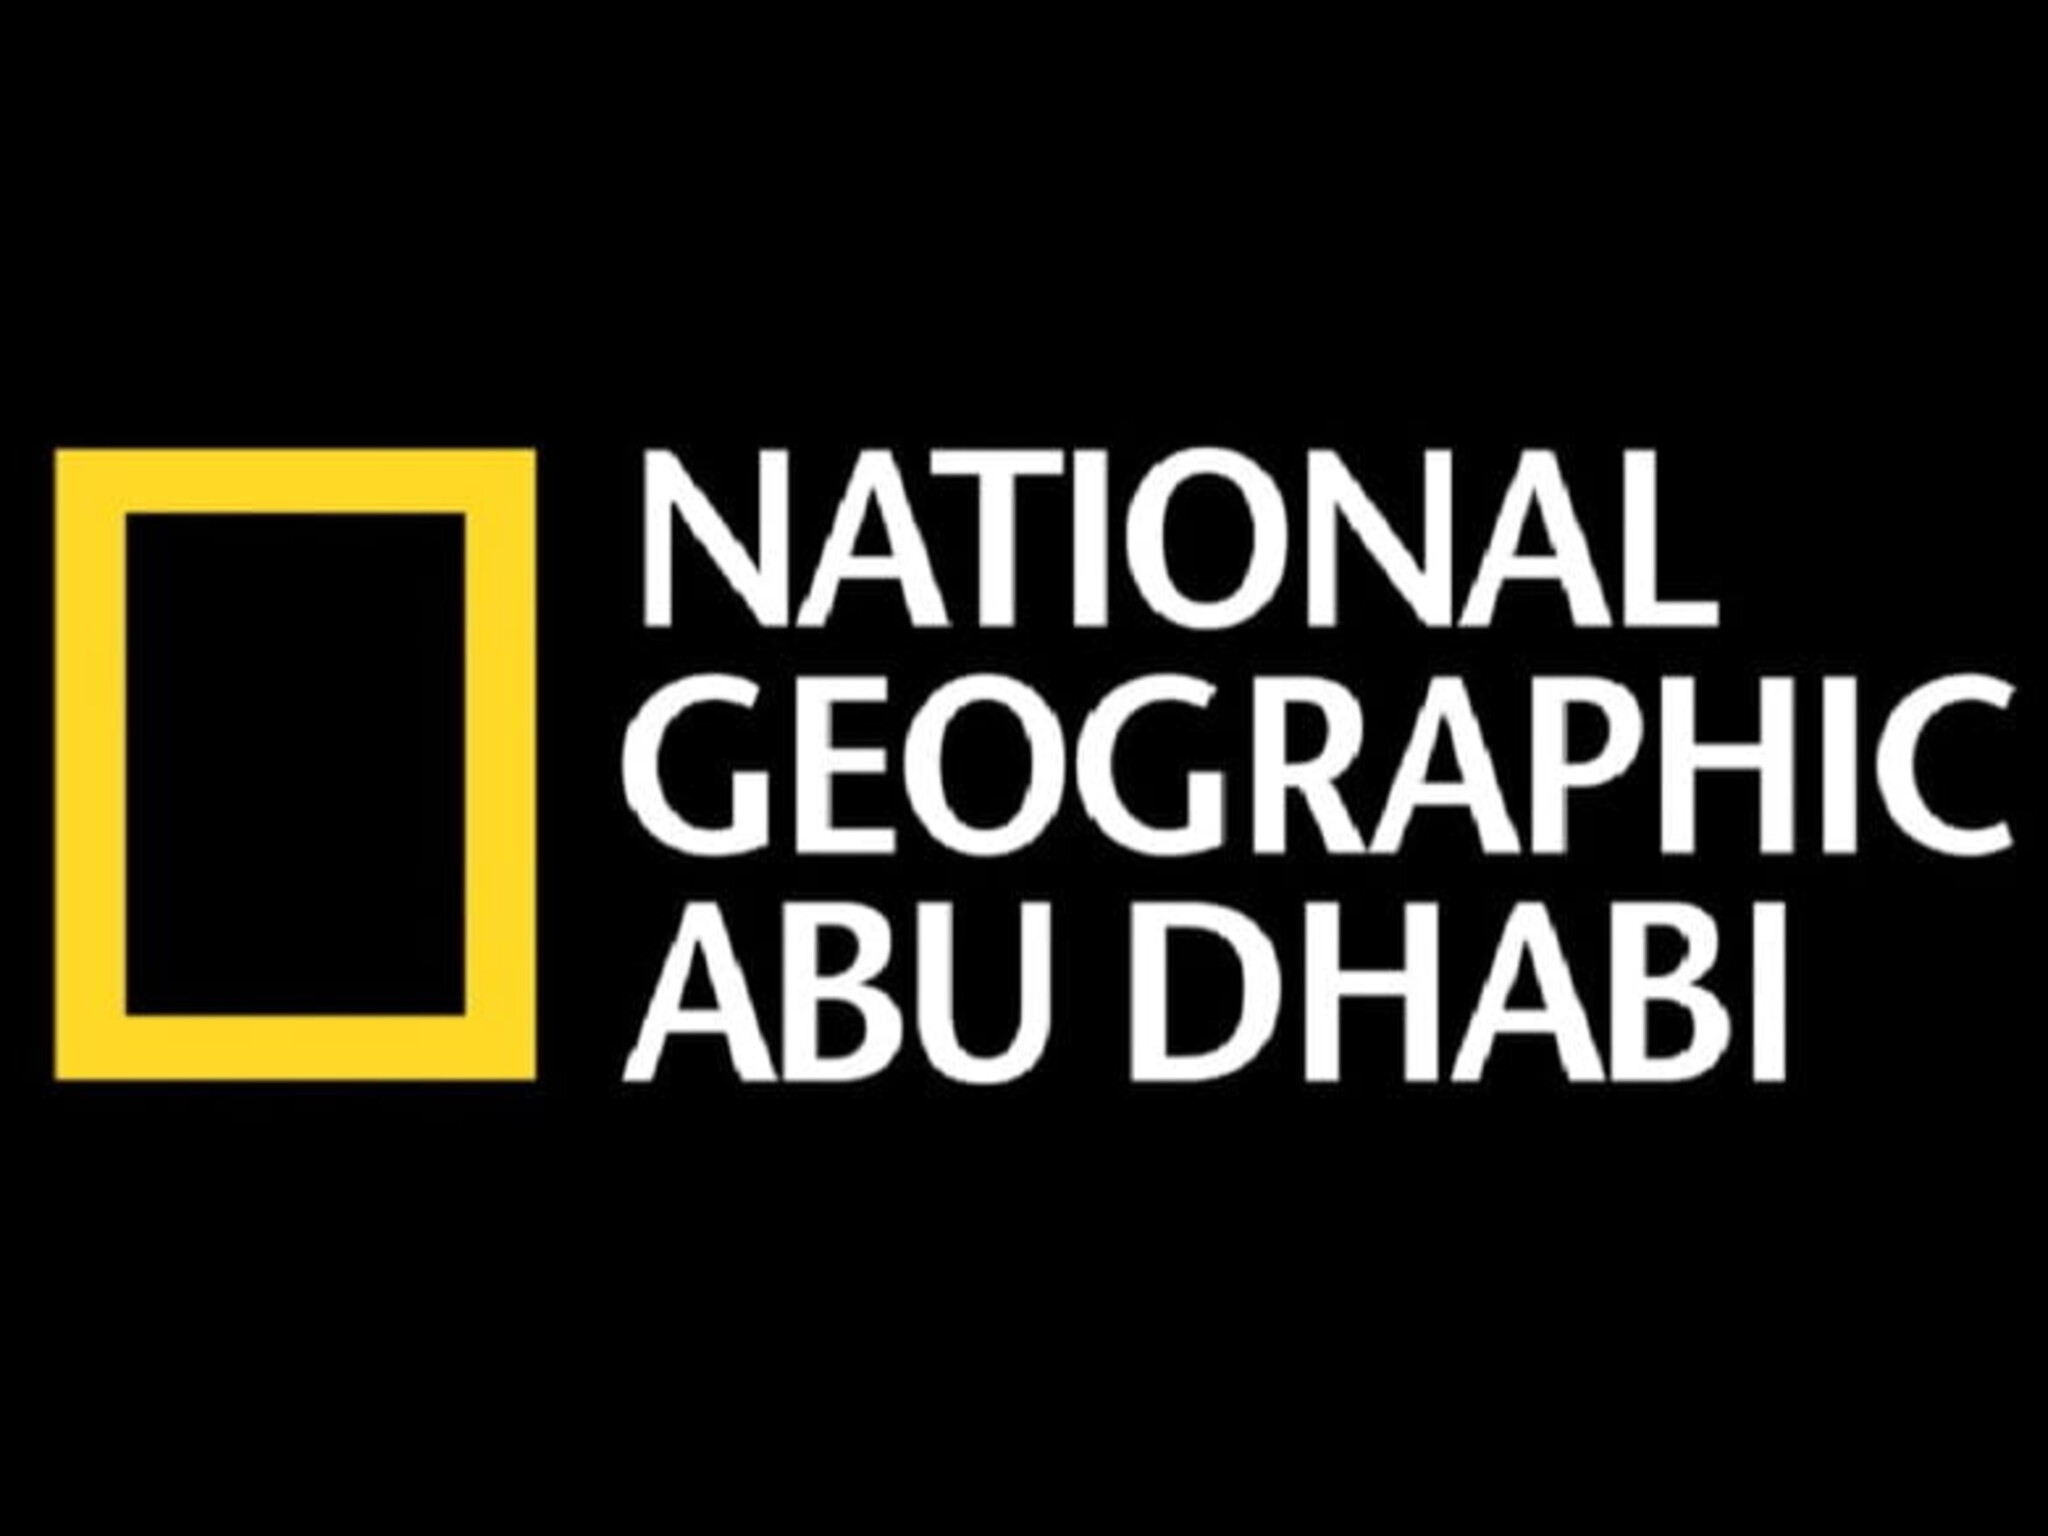 الآن...تردد قناة ناشيونال جيوغرافيك أبو ظبي الجديد National Geographic